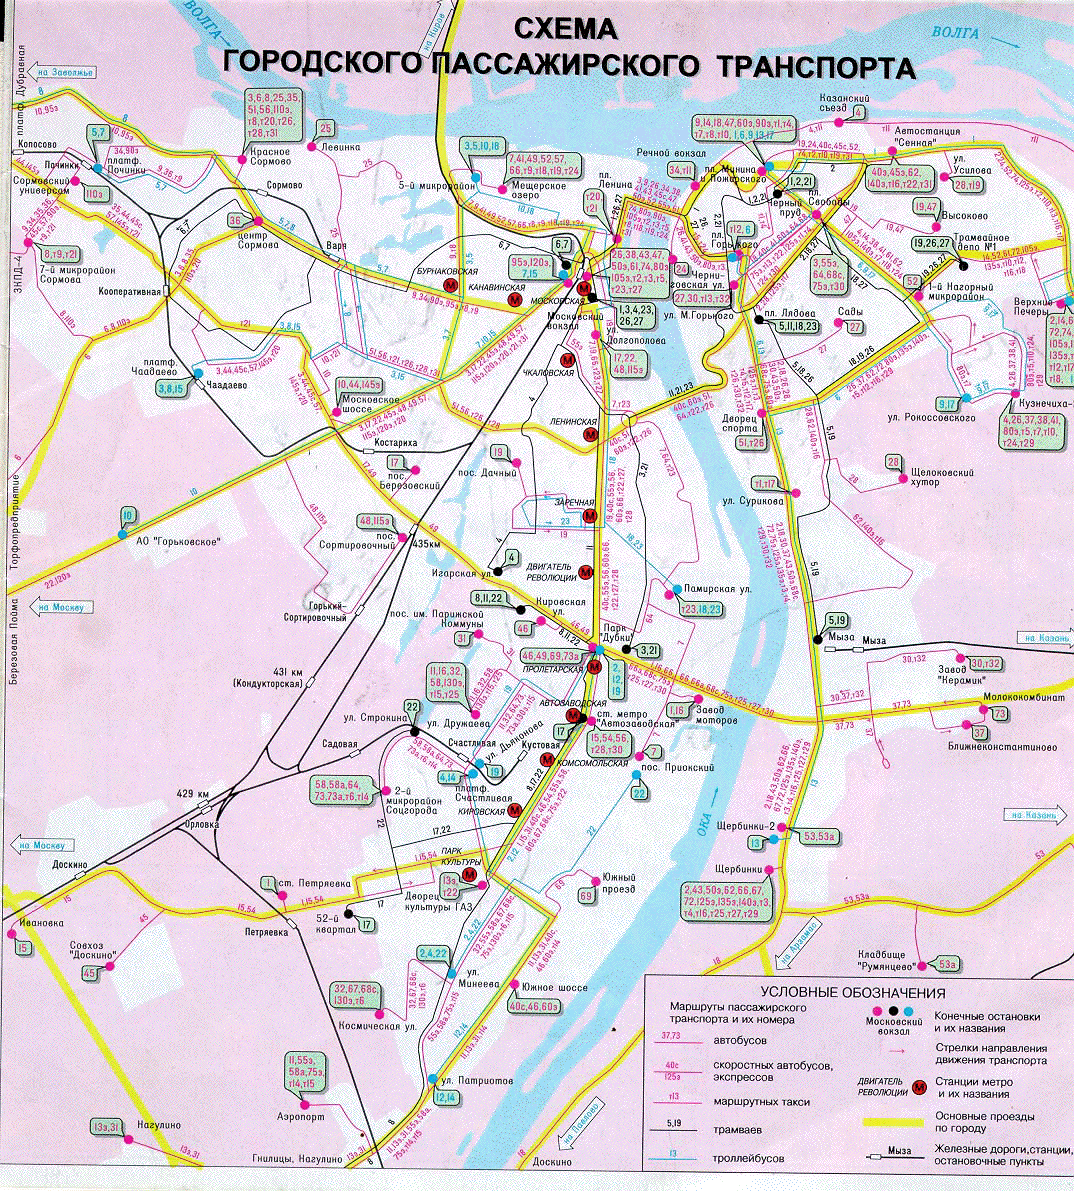 Map of Nizhniy Novgorod